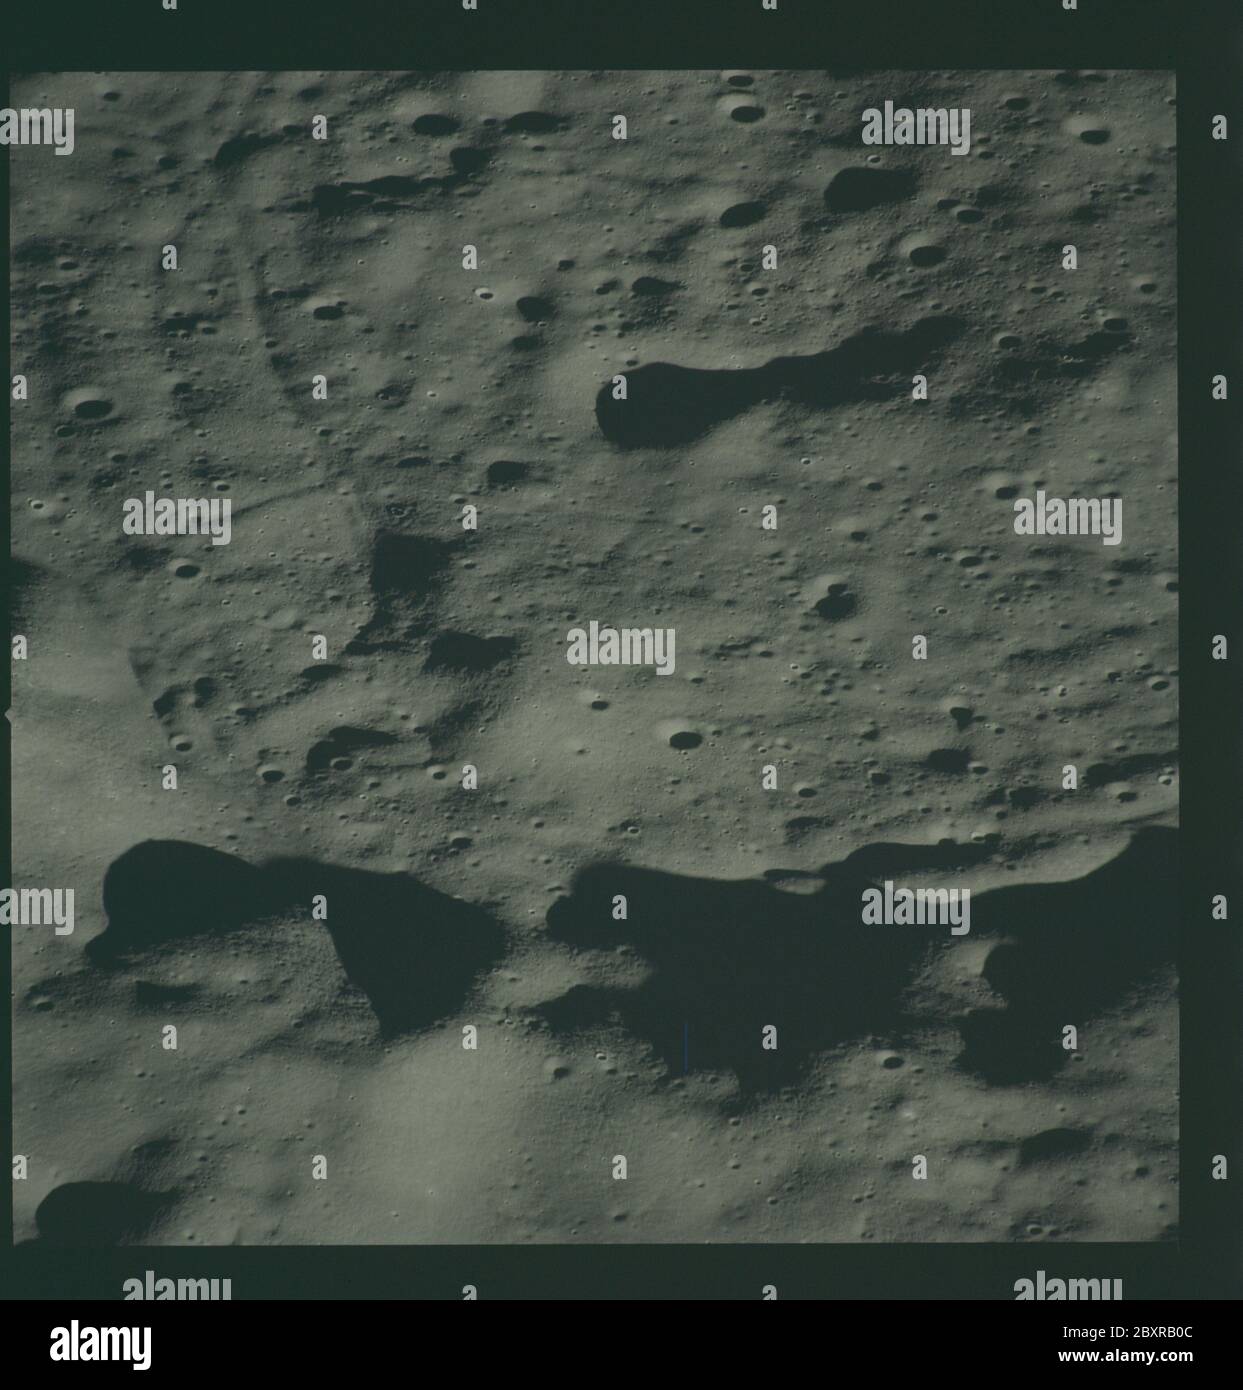 AS14-72-9959 - Apollo 14 - Apollo 14 image de la mission - vue de la surface lunaire à l'ouest du cratère de Chaplygin.; portée et contenu: La base de données originale décrit ceci comme: Description: Vue de la surface lunaire à l'ouest du cratère de Chaplygin. Des images ont été prises pendant la Révolution 14 de la mission Apollo 14. Le magasin original de film a été étiqueté L, le type de film était CEX S0-368 (EKTACHROME MS, Color Reversal), objectif de 500 mm avec une élévation du soleil de 7 degrés. L'échelle de photo approximative était de 1:1,360,000. La latitude du point principal était de 4.0S par Longitude 146.0E, avec une inclinaison de la caméra de 50 degrés et un azimut de 120 degrés Banque D'Images